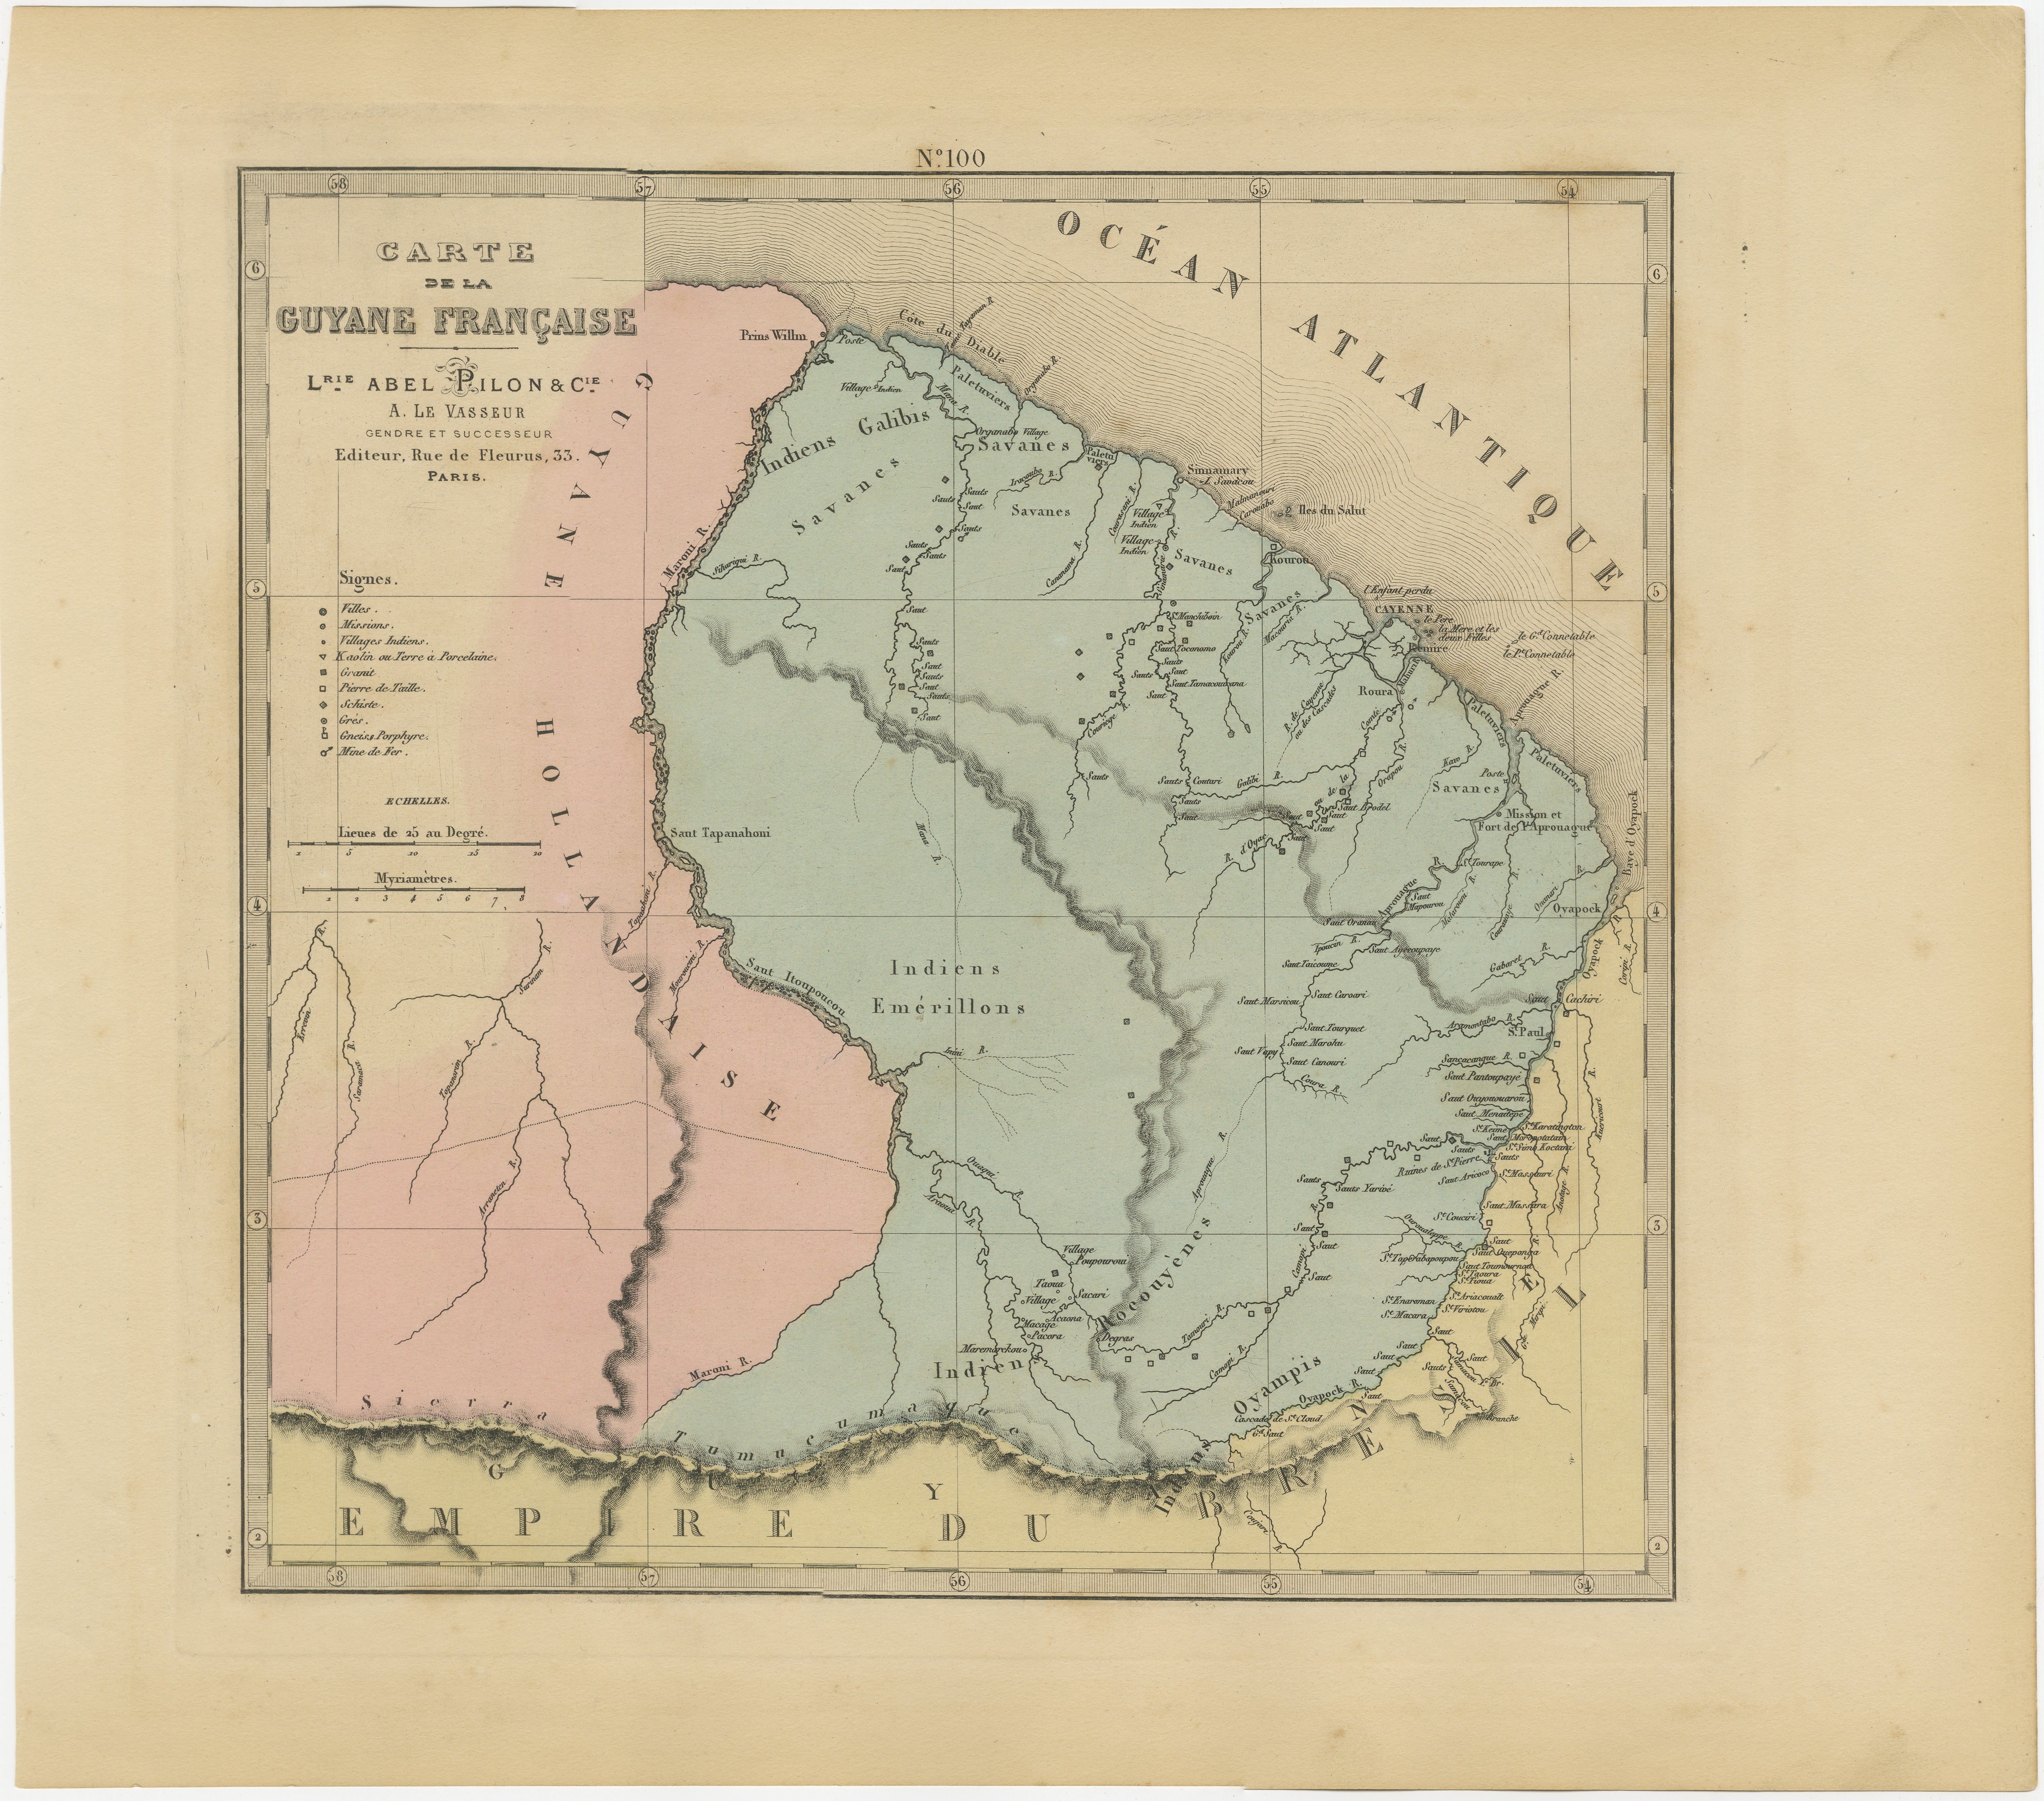 La carte de la Guyane française de 1876, tirée du 